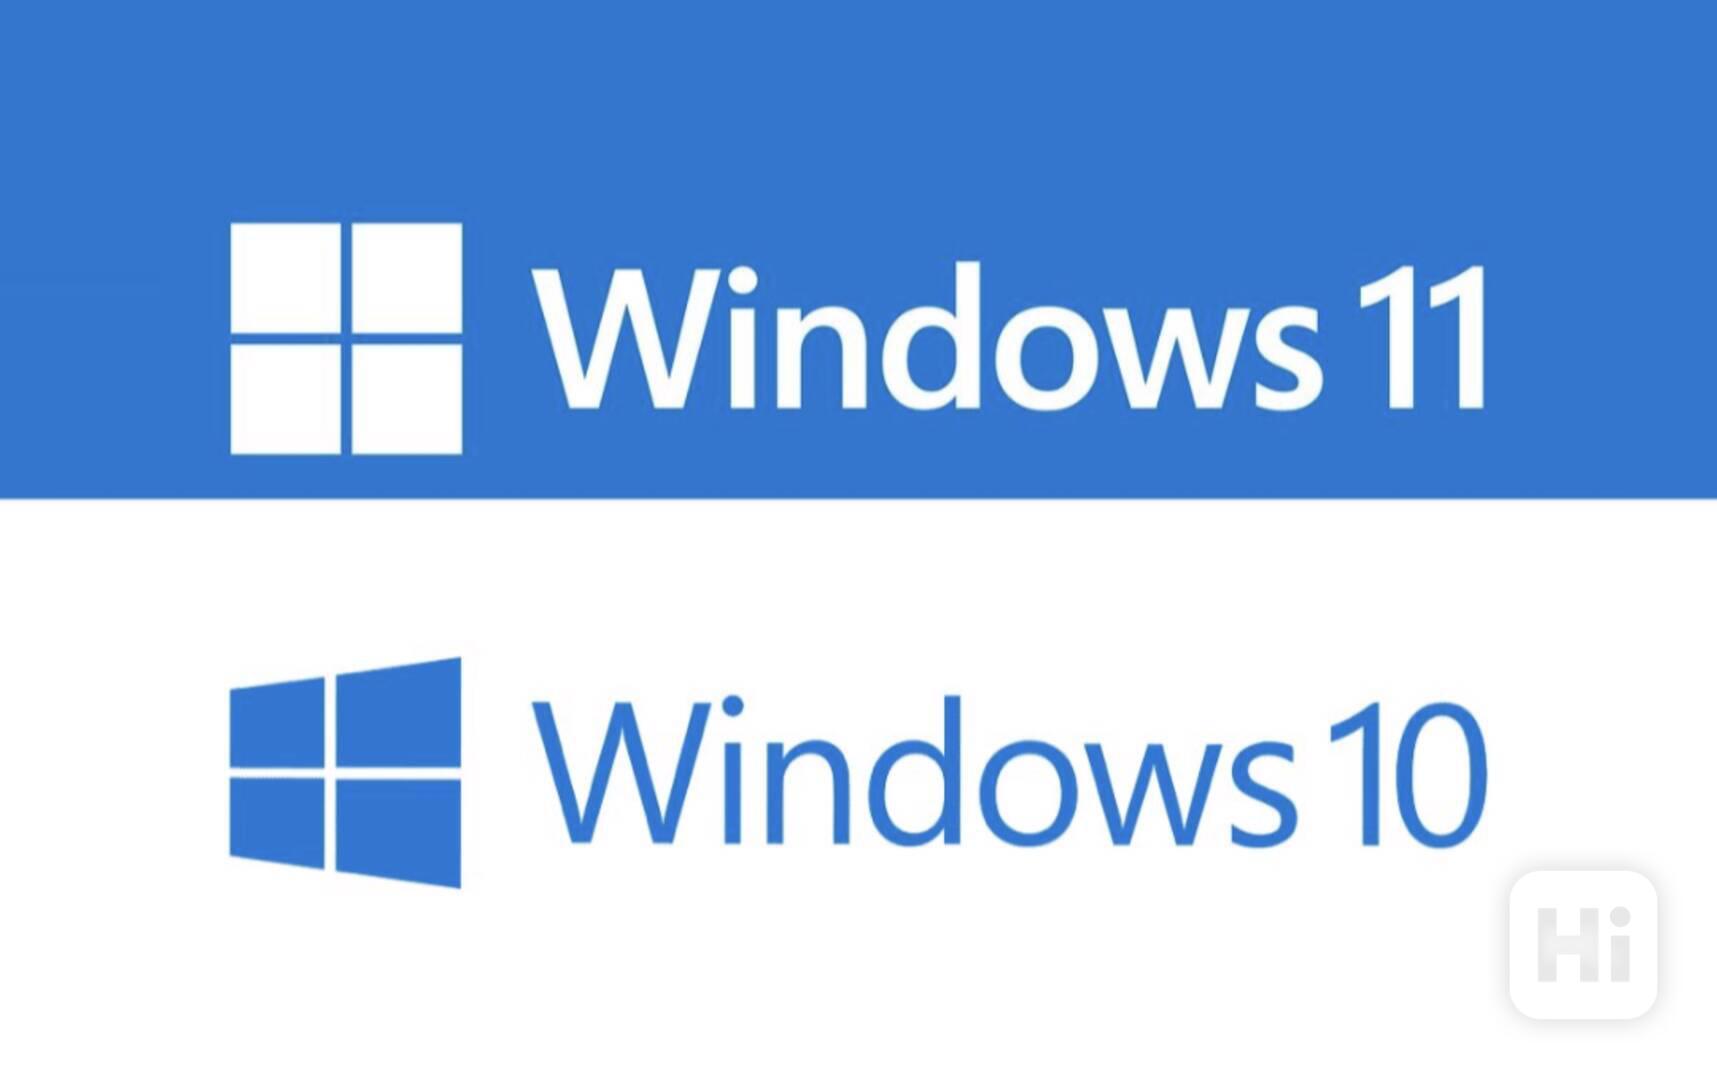 Windows 10 / 11 - Home / Pro Licenční klíč - Okamžité dodání - foto 1